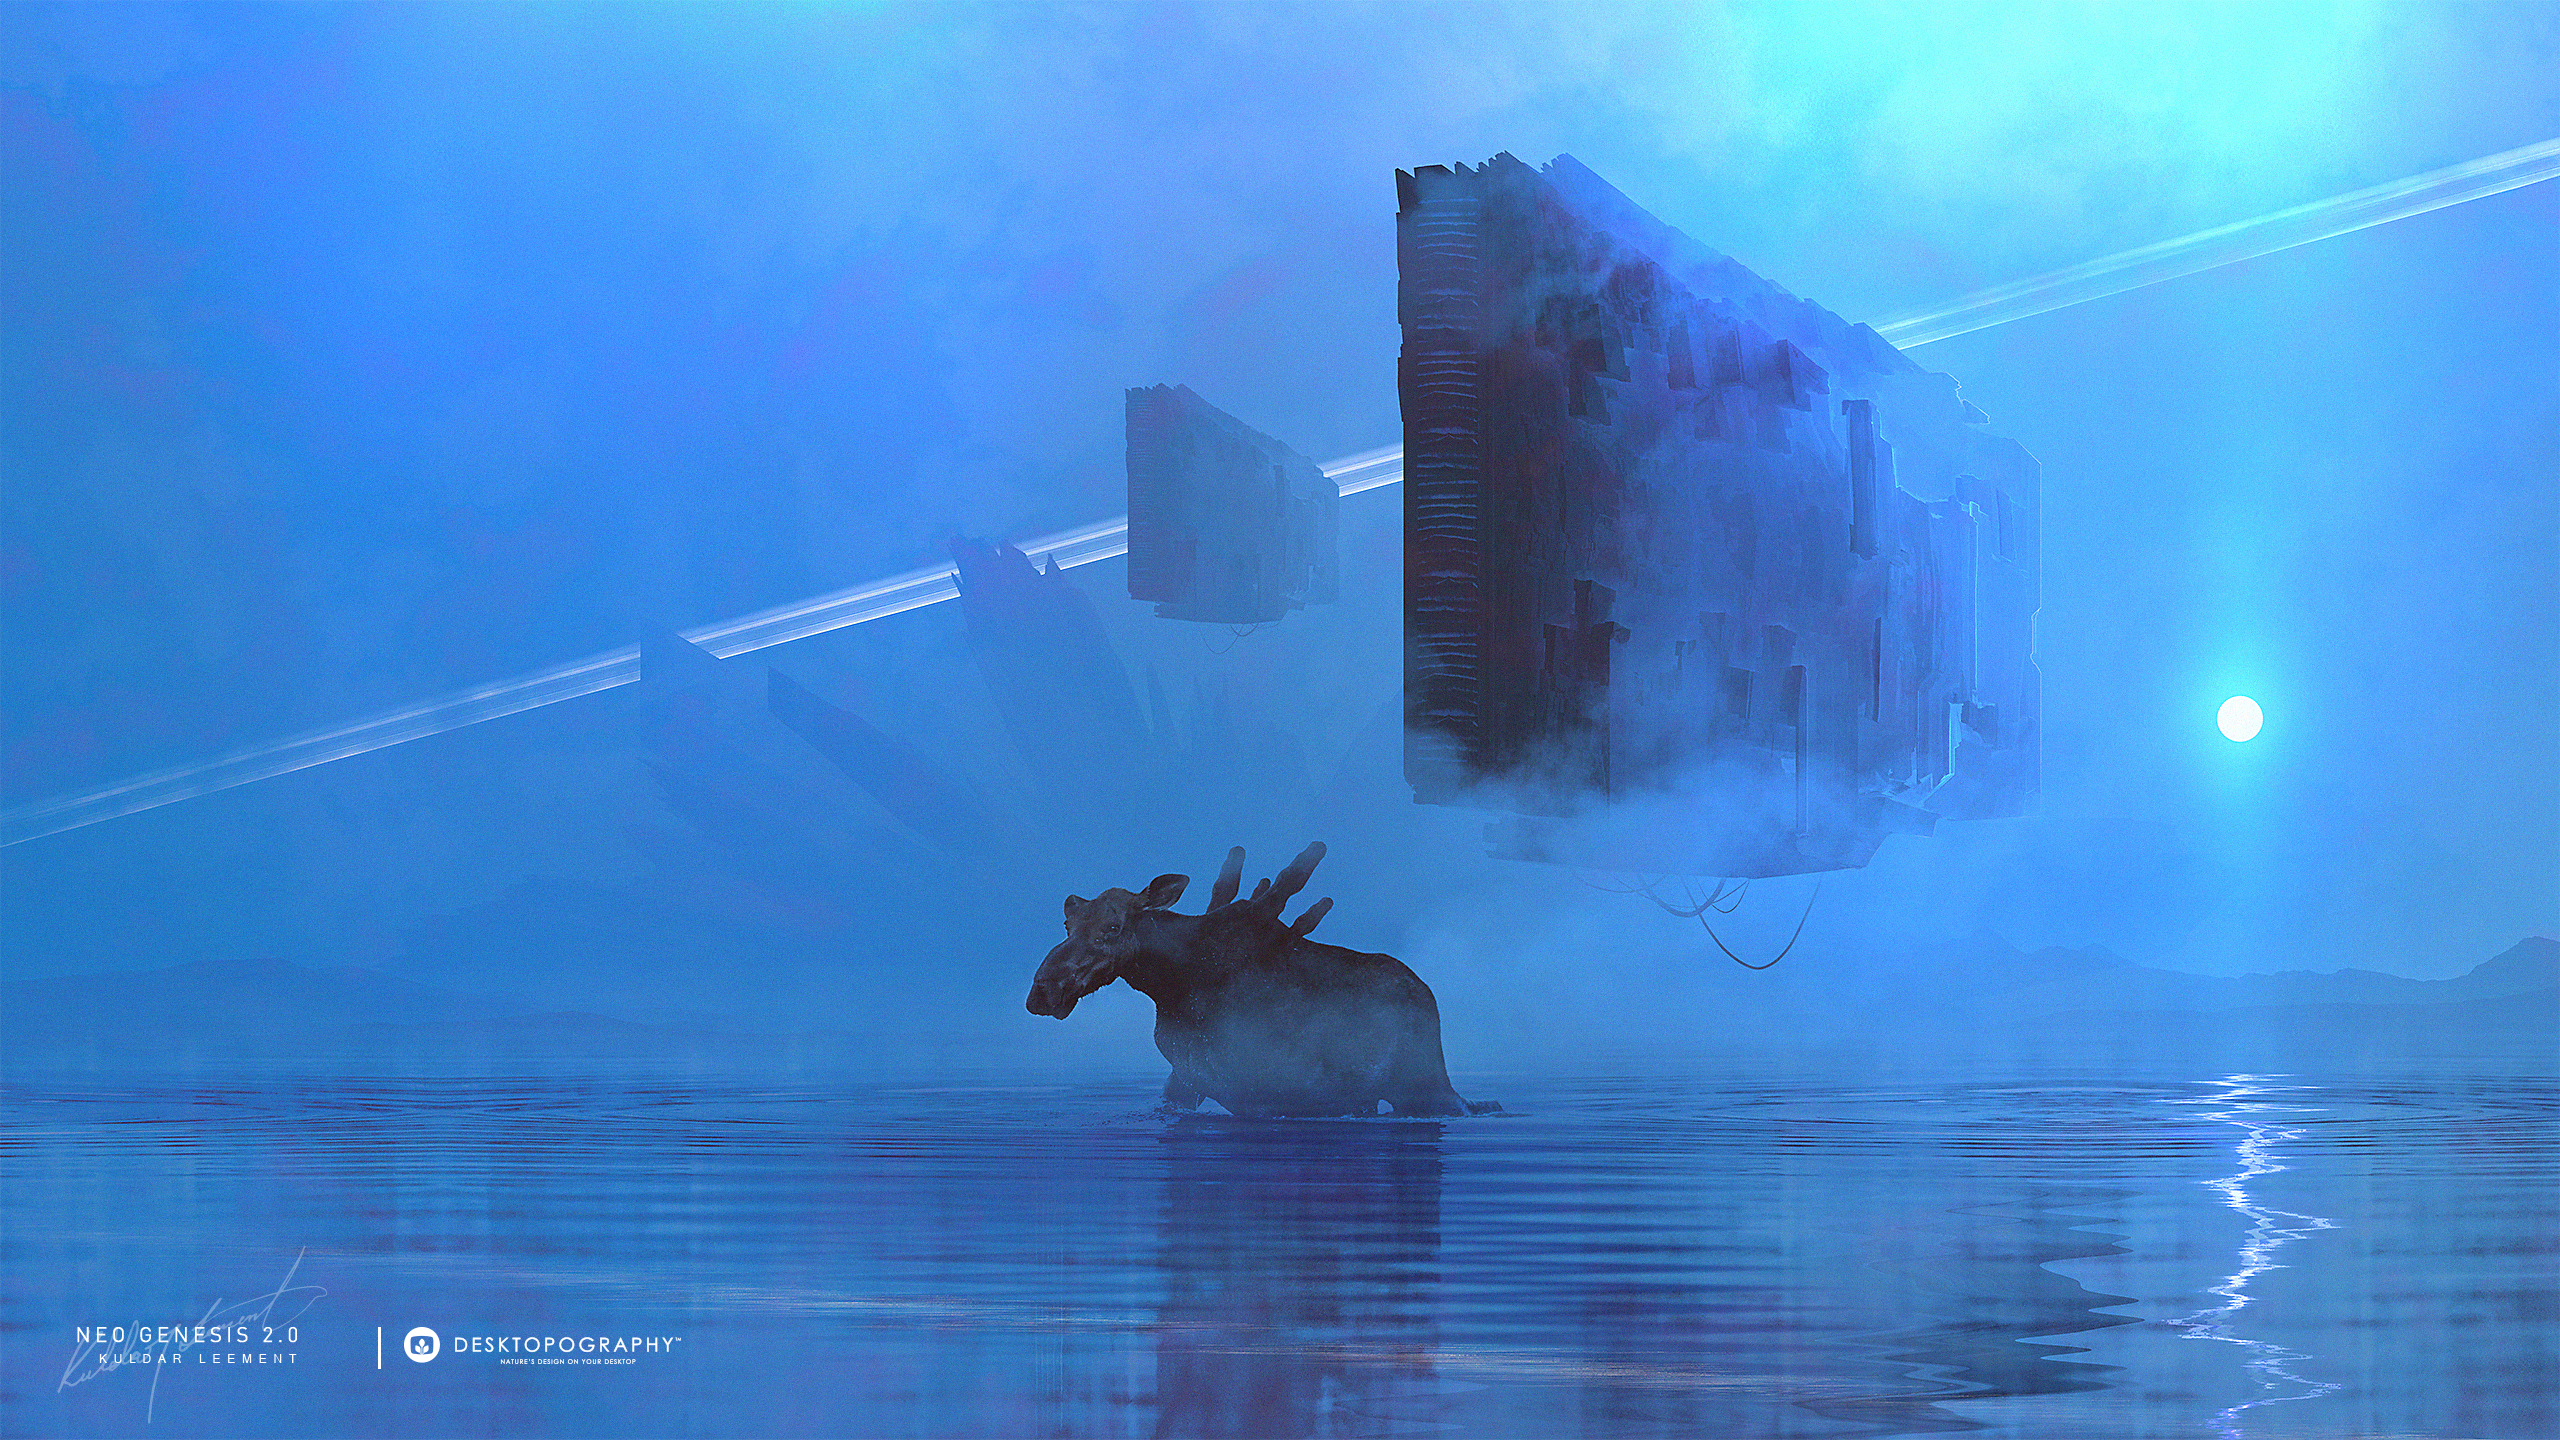 Desktopography Photoshop Digital Moose Spaceship Water Fantasy Art Kuldar Leement Elk Blue Cyan 2560x1440